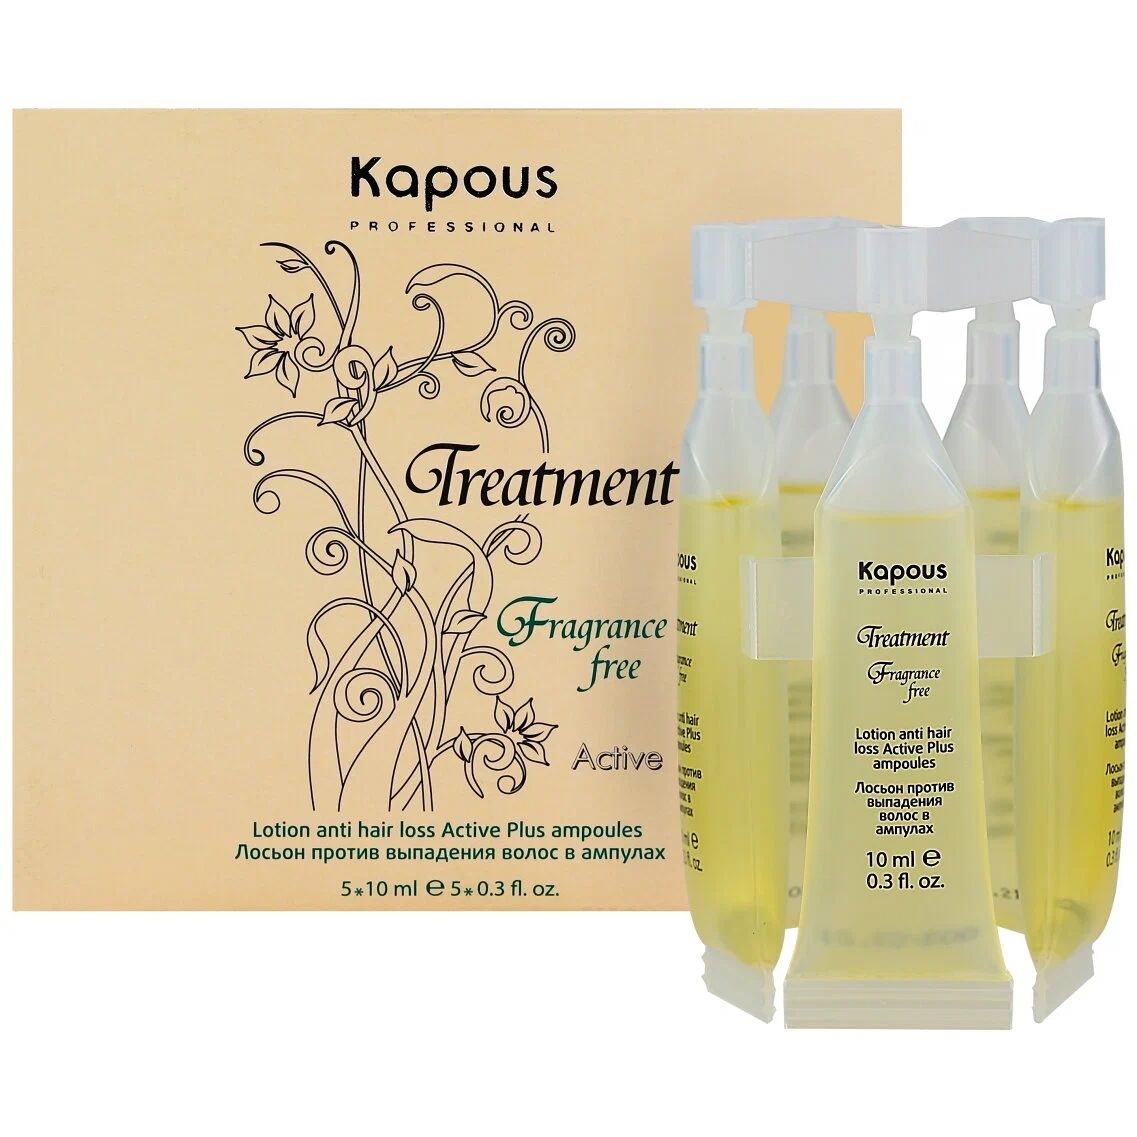 Лосьон для волос Kapous Professional Treatment Fragrance free в ампулах 5х10 мл восстанавливающий лосьон в ампулах cd